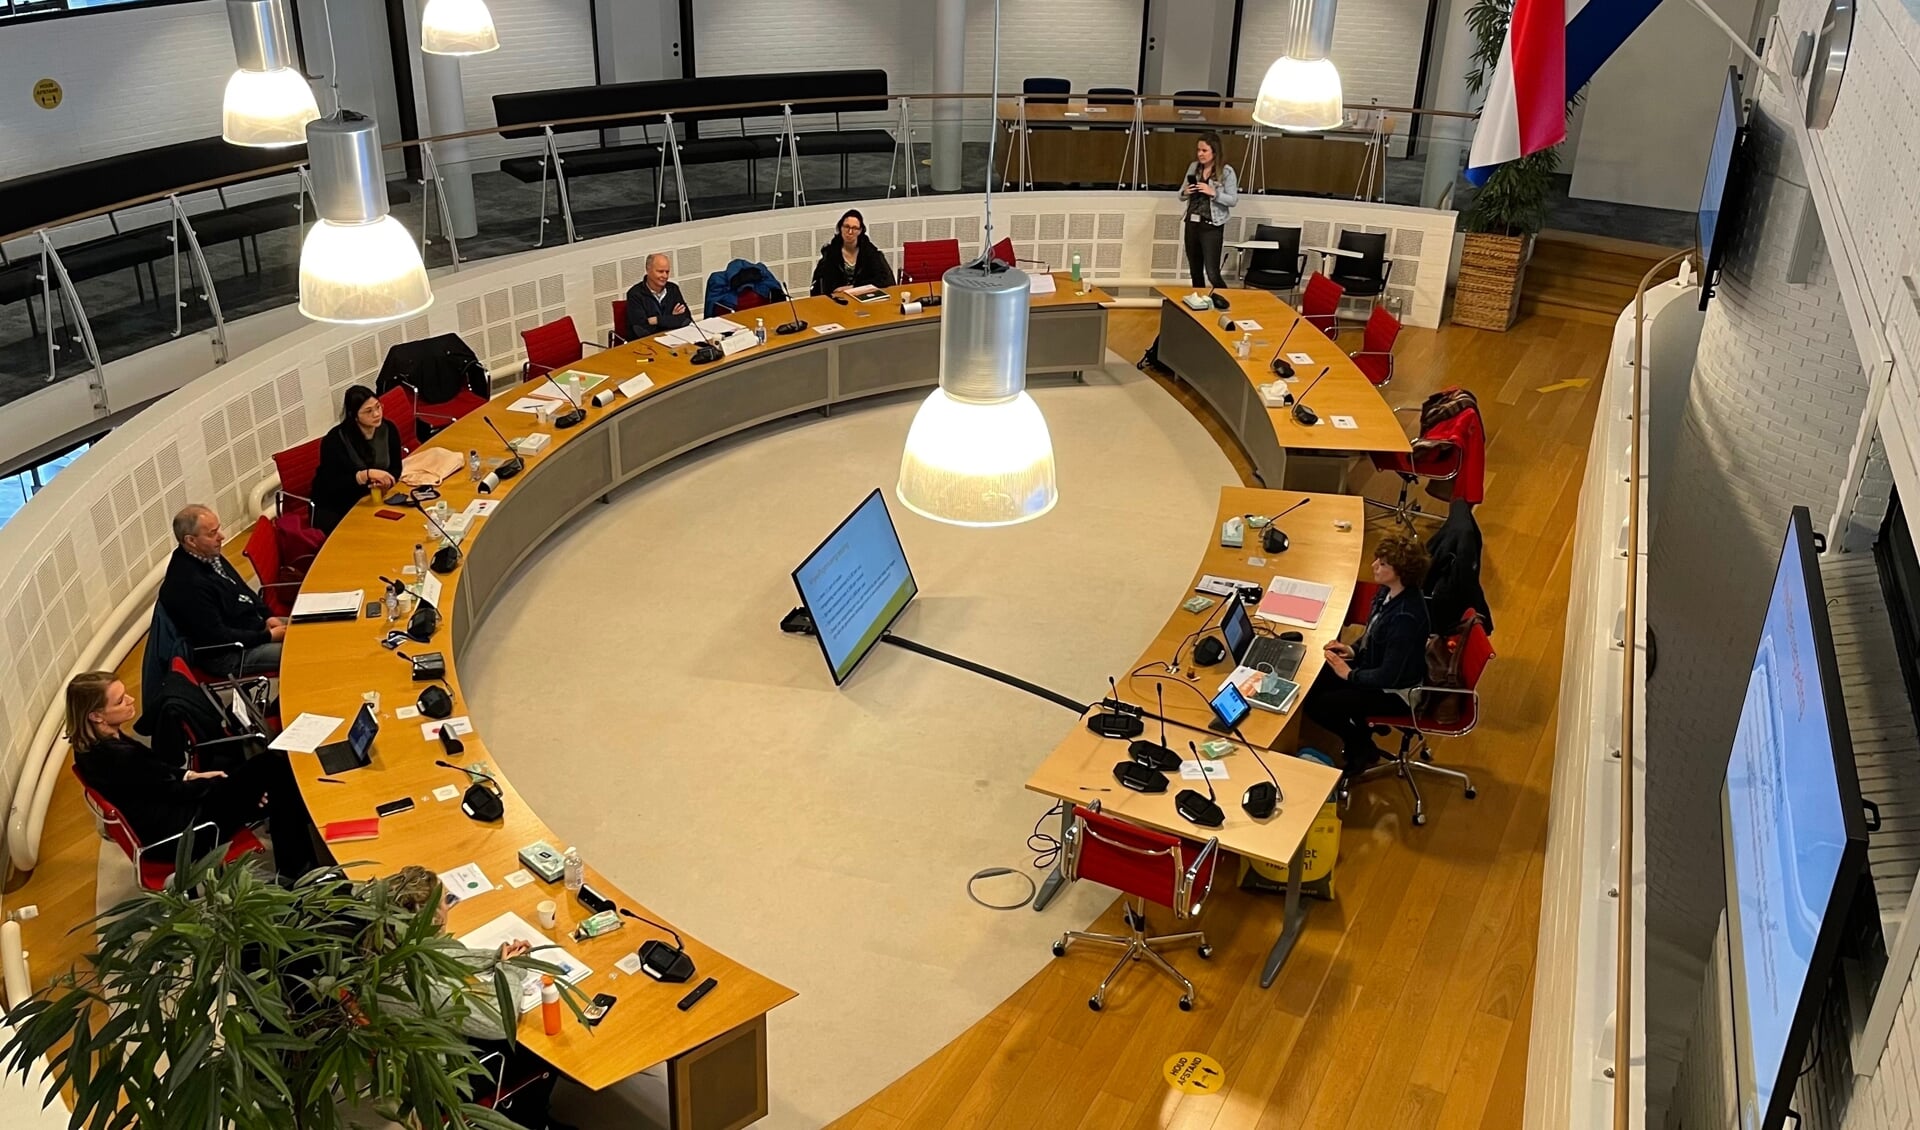 De nieuwe lichting Energiecoaches krijgt training in de raadzaal te Ouderkerk.